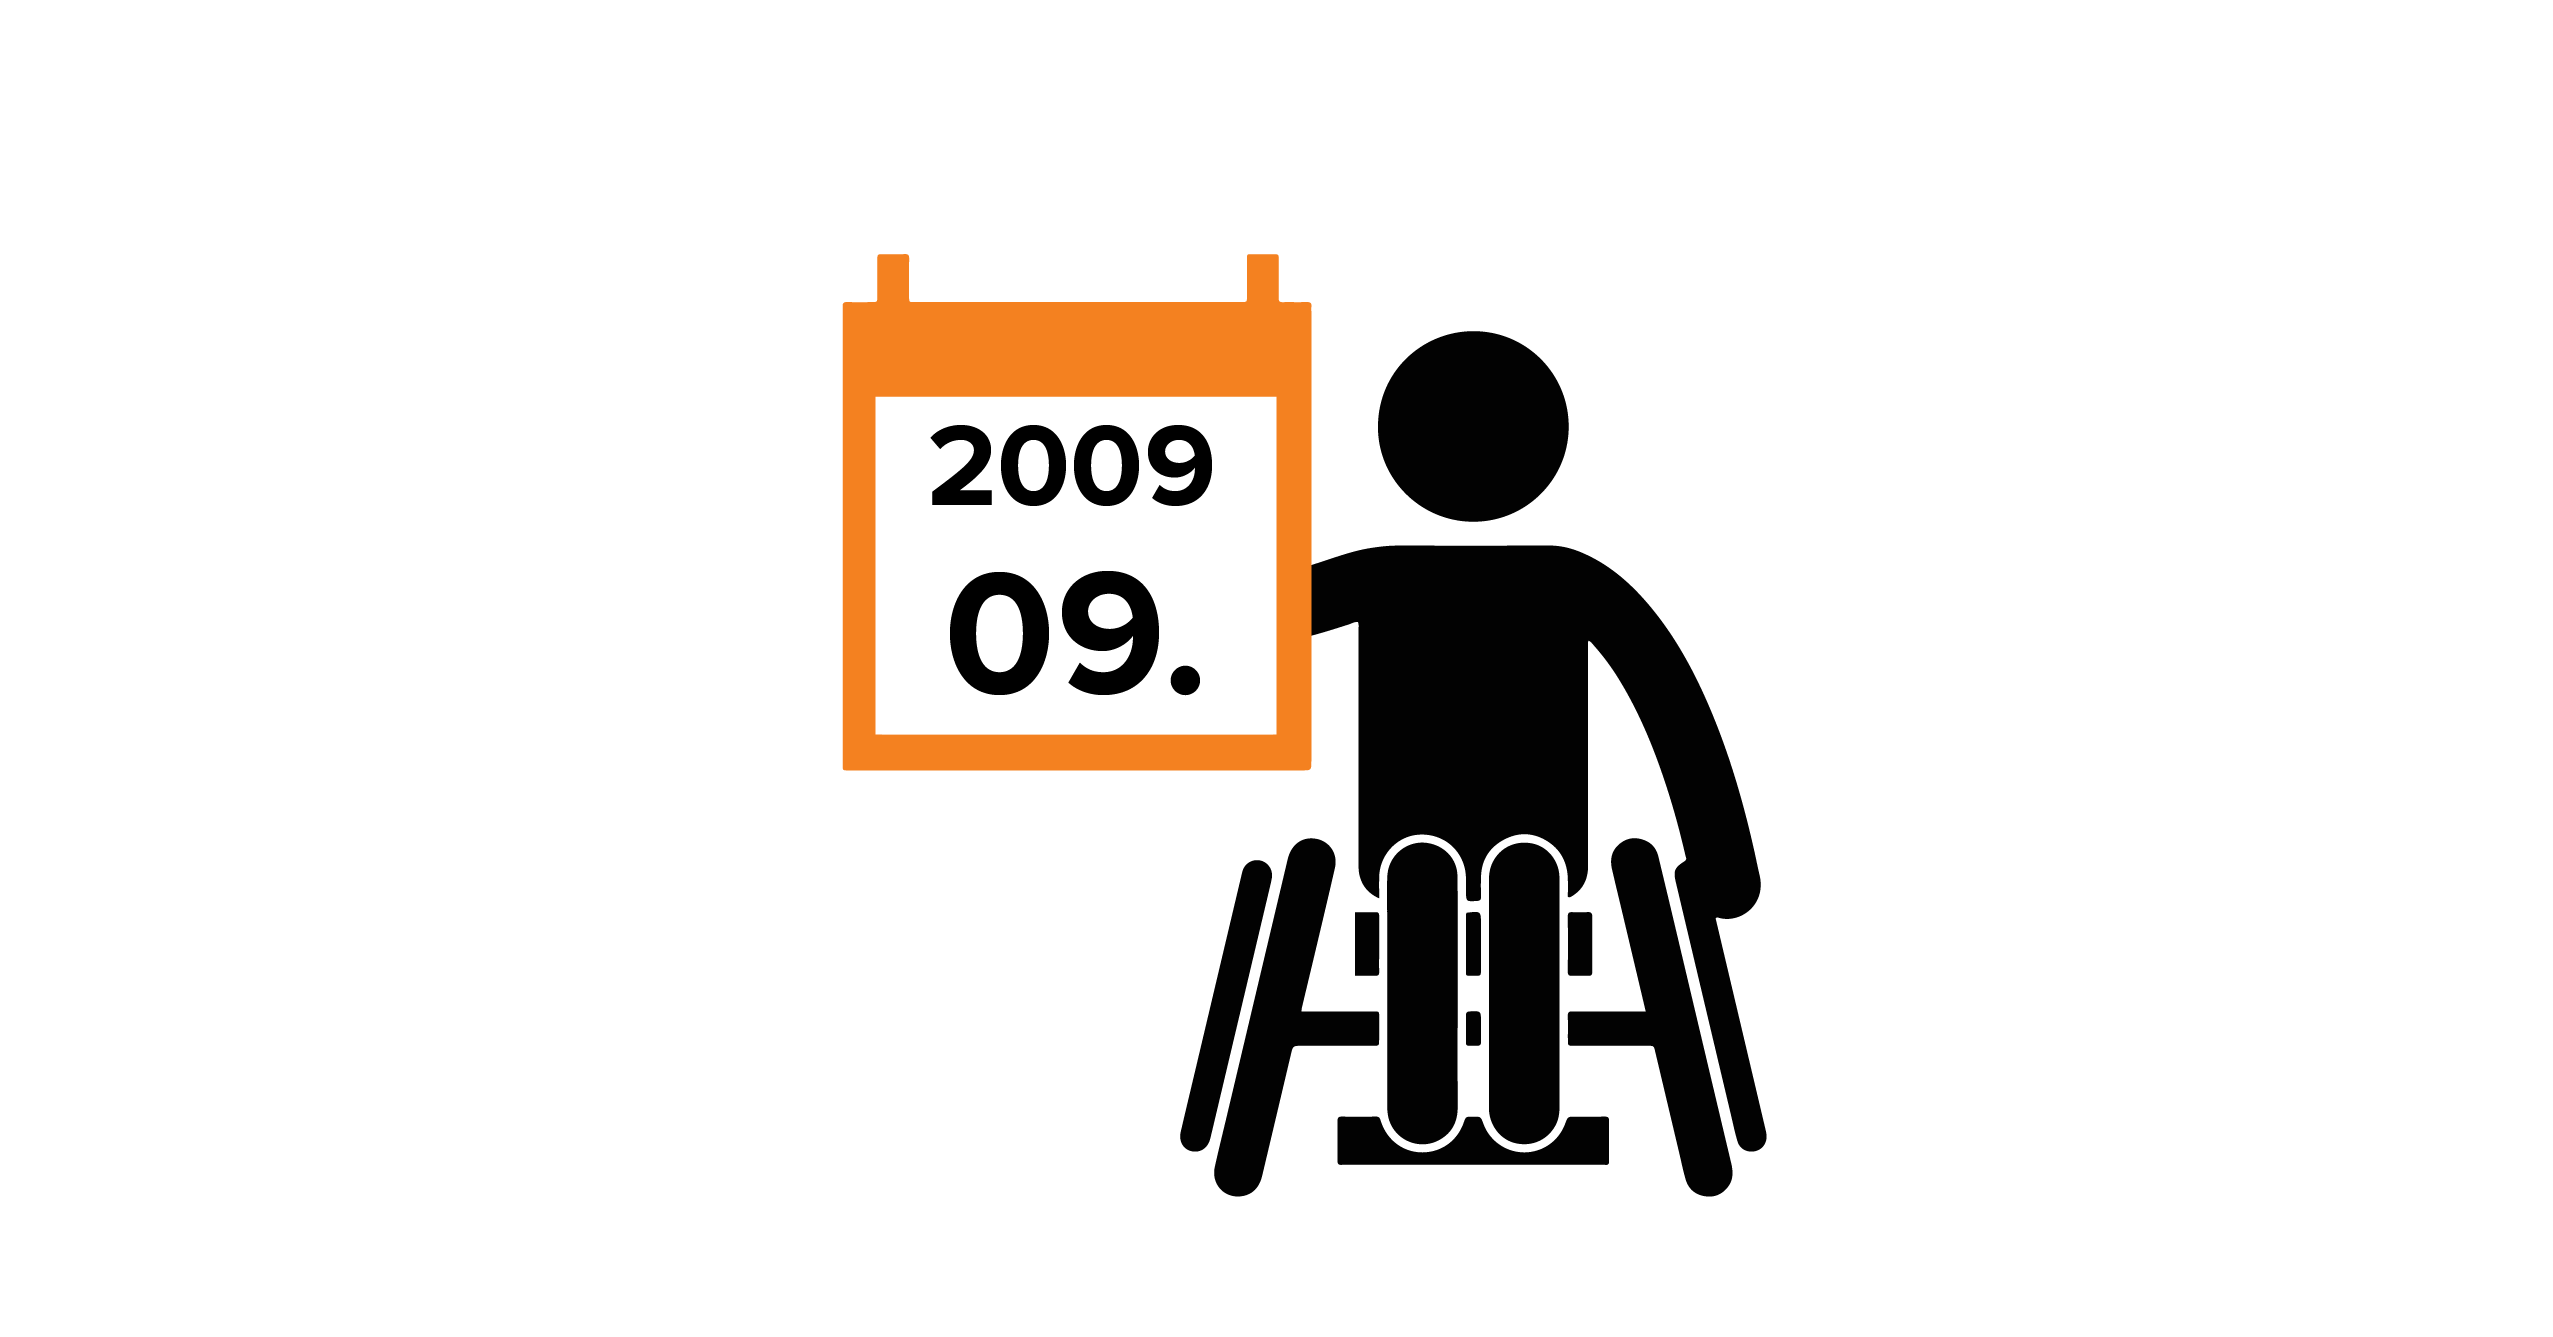 Na grafice człowiek na wózku trzymający kalendarz z datą 09.2009